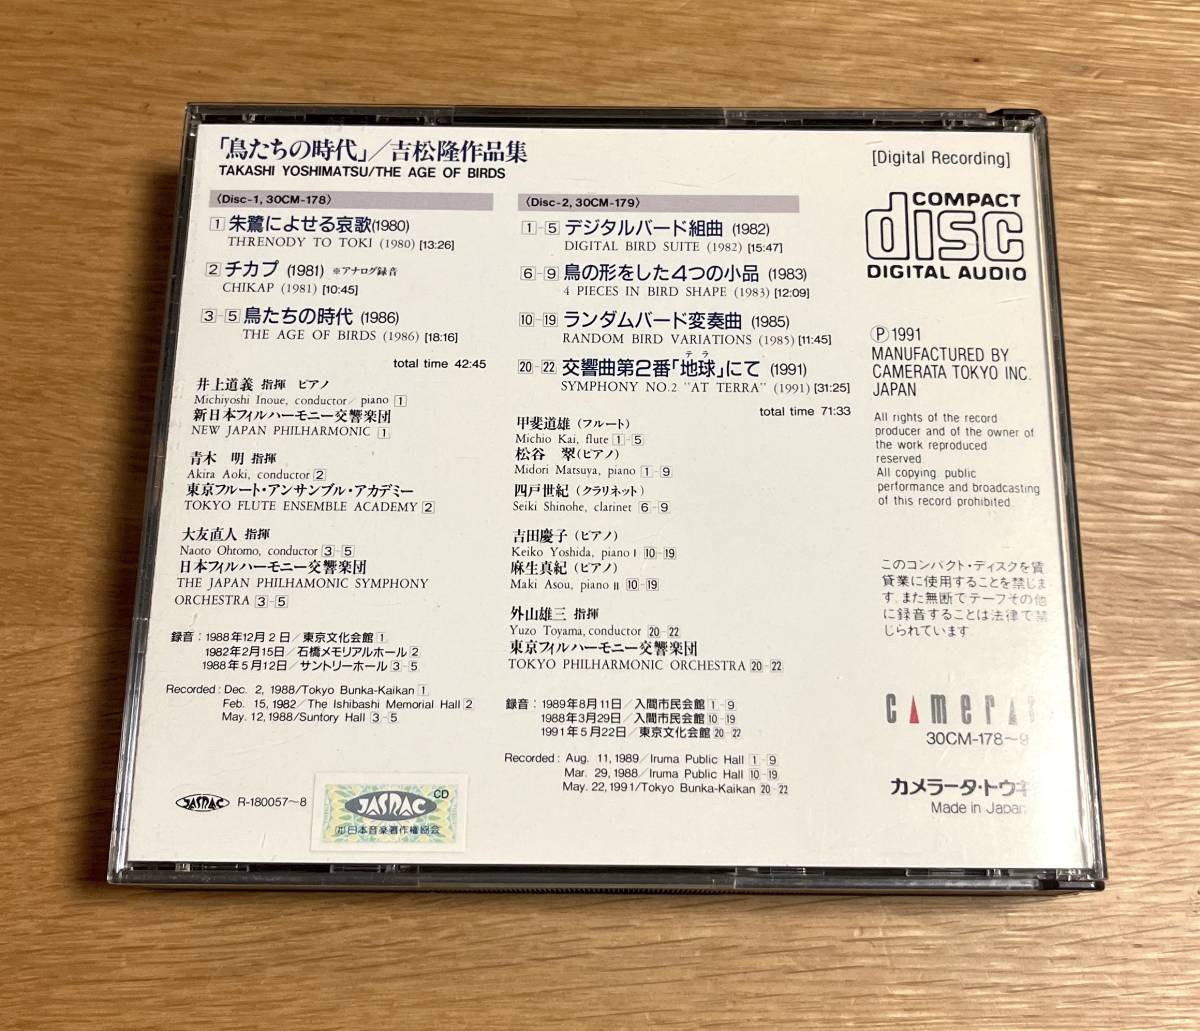 吉松隆 / 鳥たちの時代 2枚組CD / Takashi Yoshimatsu 朱鷺によせる哀歌 チカプ デジタルバード組曲 交響曲第２番「地球」にて 管理079_画像4